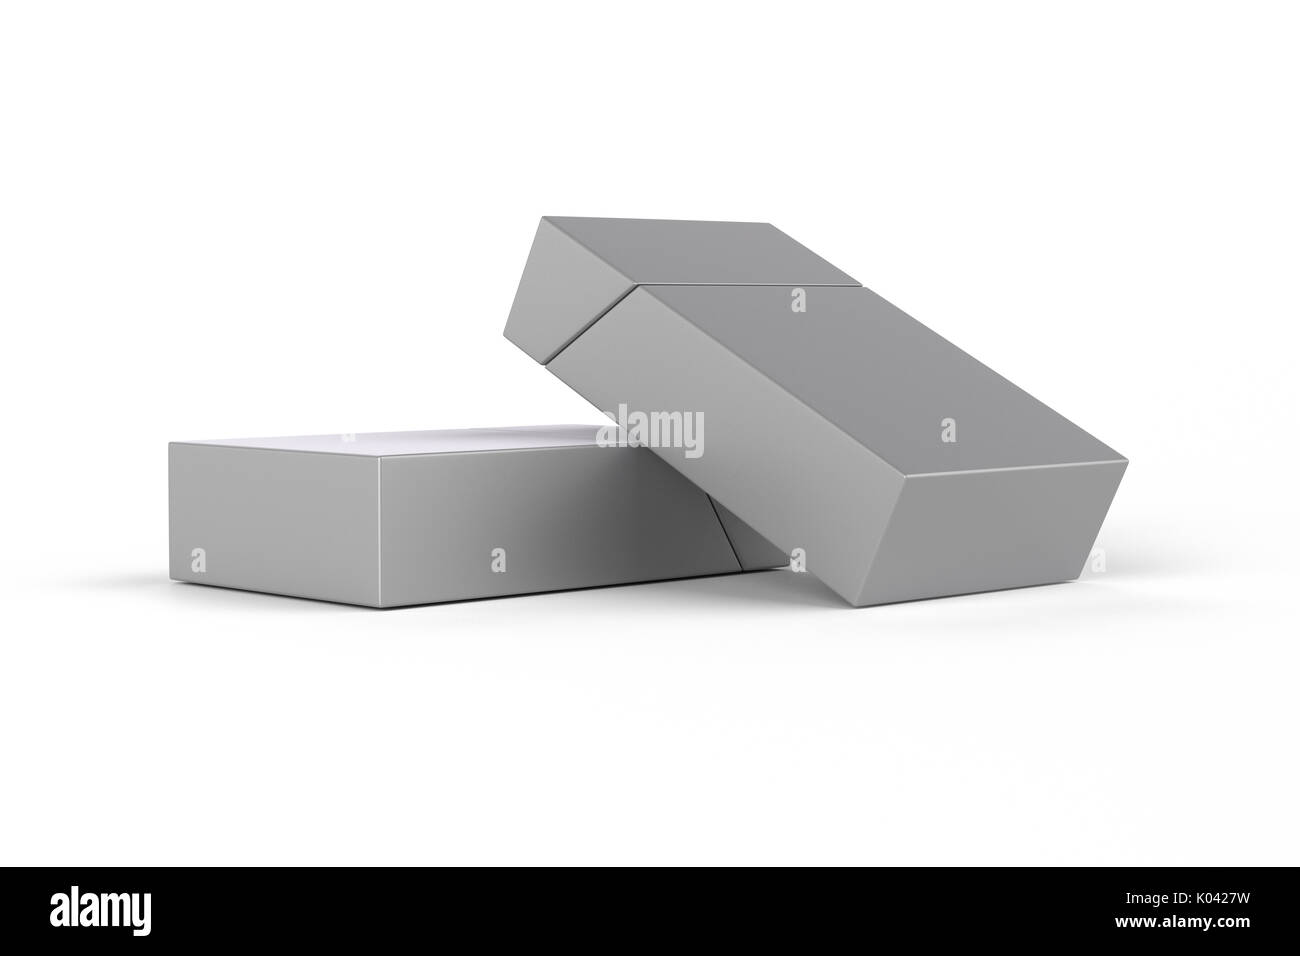 3D Render composición de dos cajas de cigarrillos king size o paquetes sobre un fondo blanco con sombra. Trazado de recorte. Plantilla para su diseño. Foto de stock